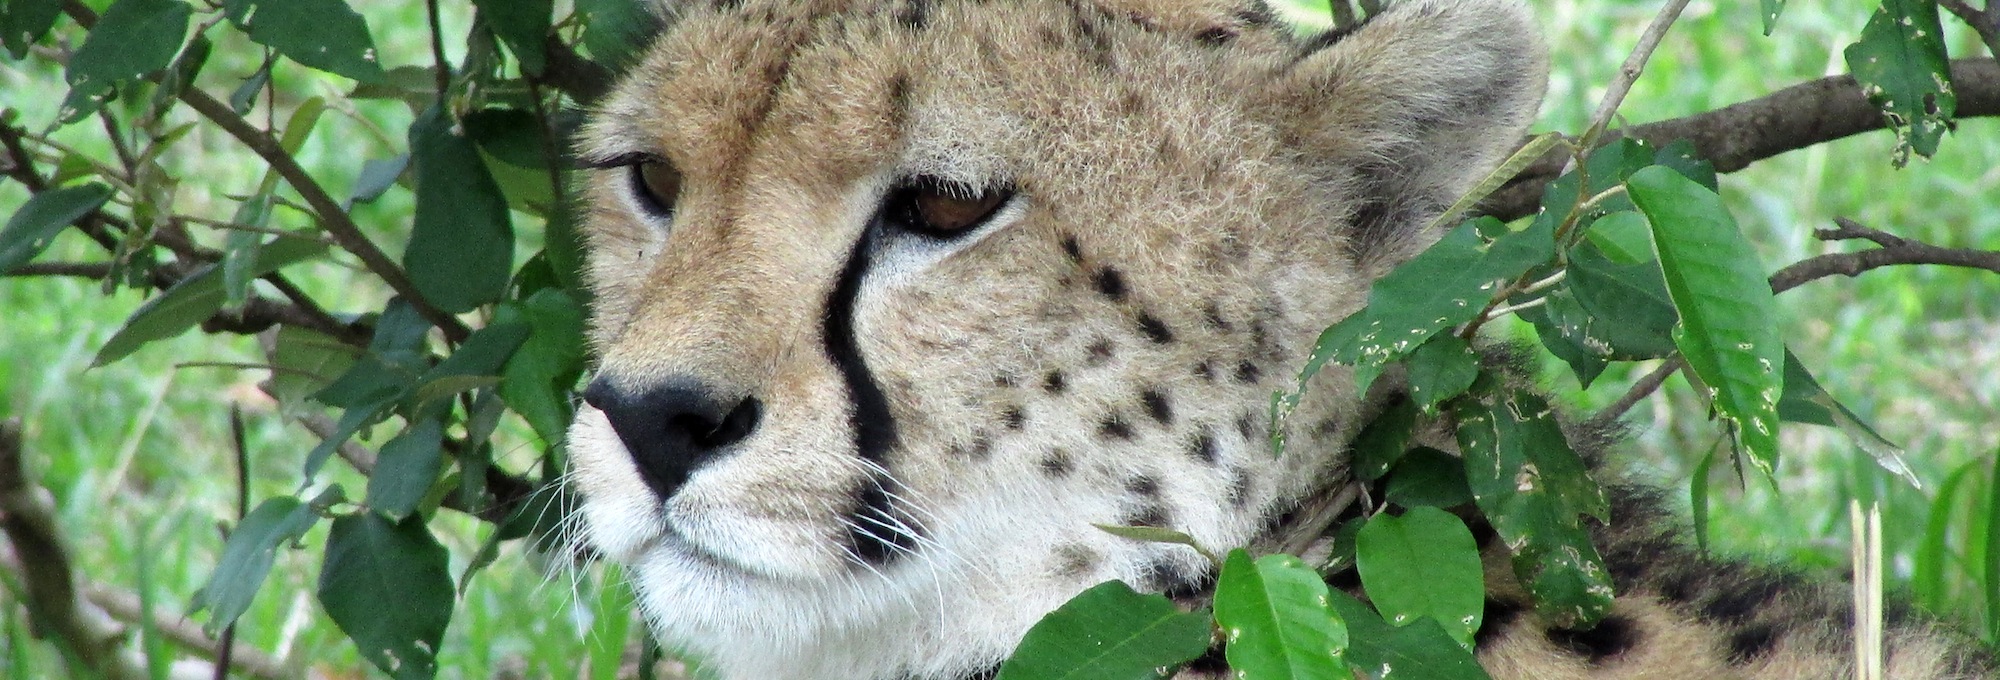 …la impresionante figura del guepardo regalando a tus ojos el placer de contemplarlo…